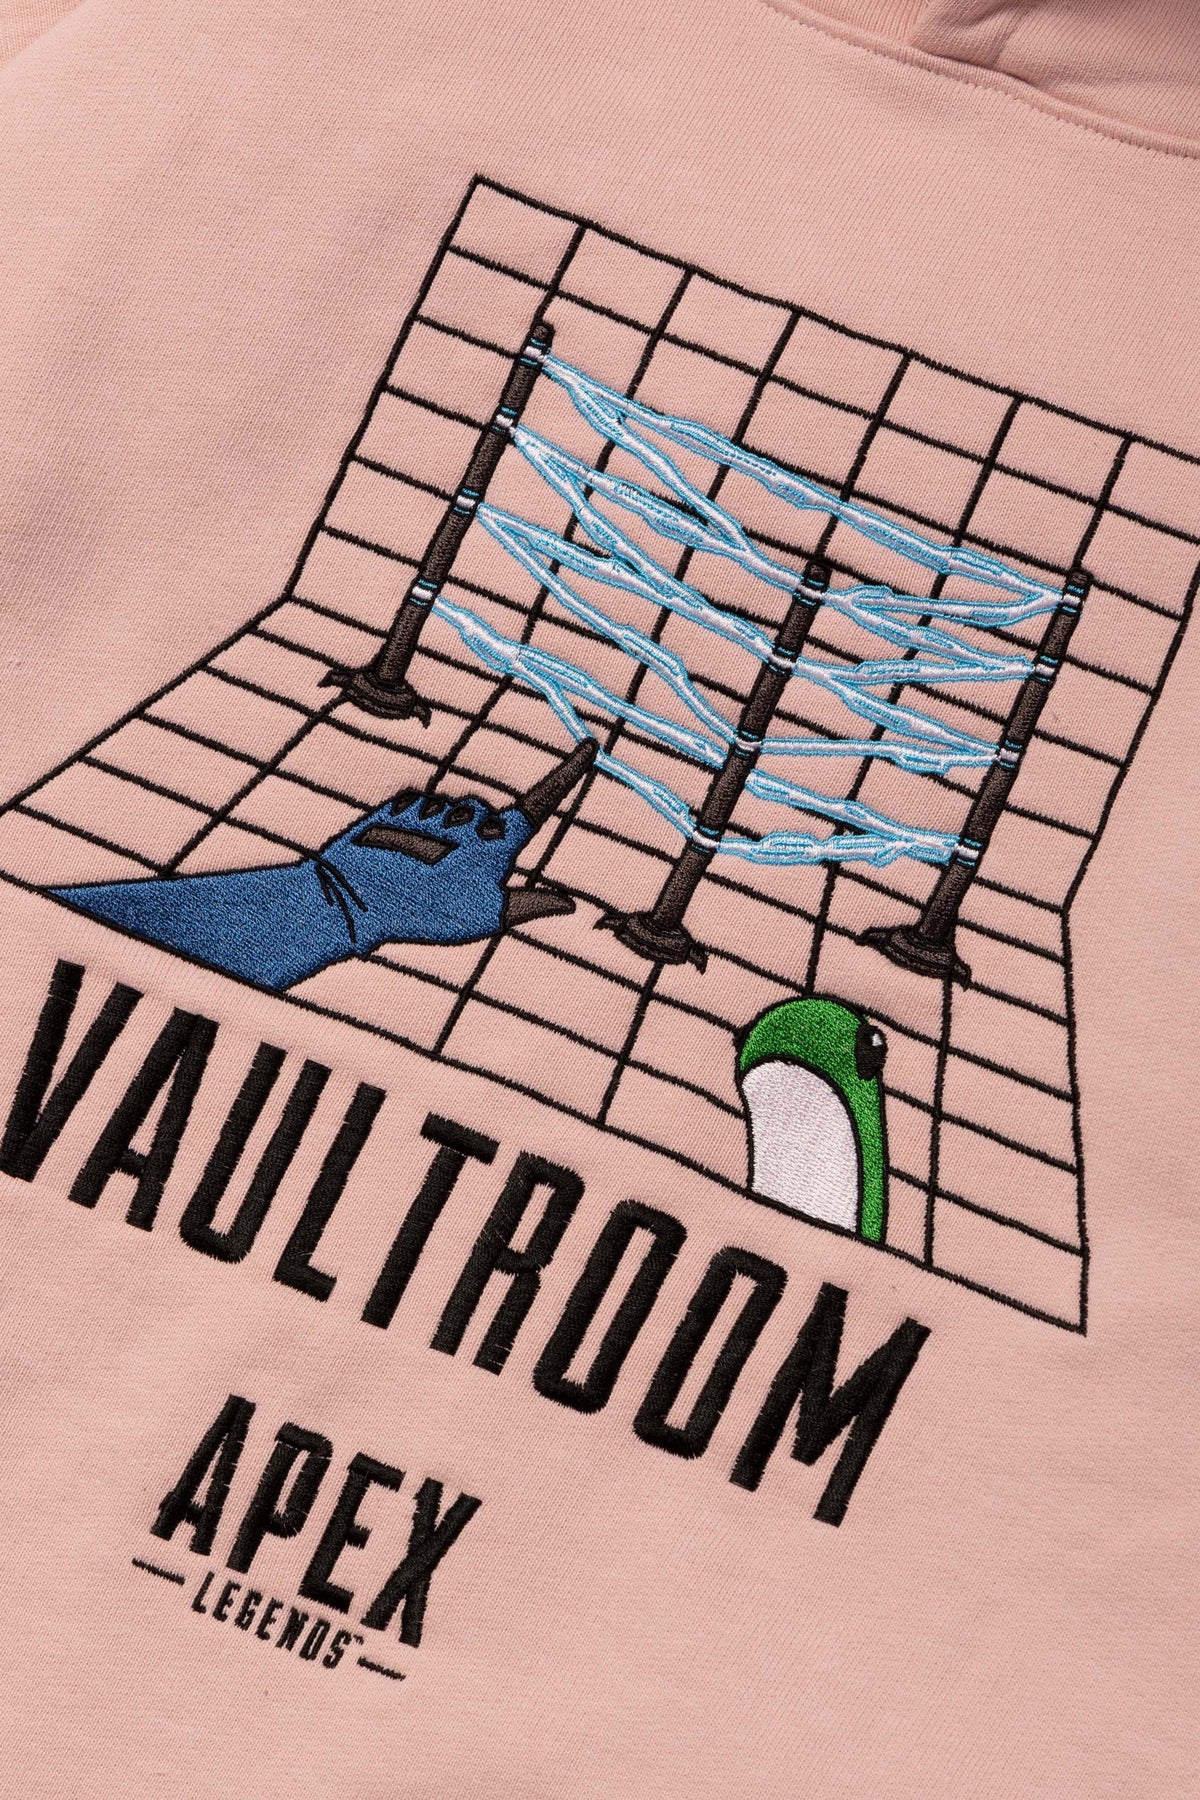 APEX LEGENDS × vaultroom WATTSON TEEapexlegends - Tシャツ